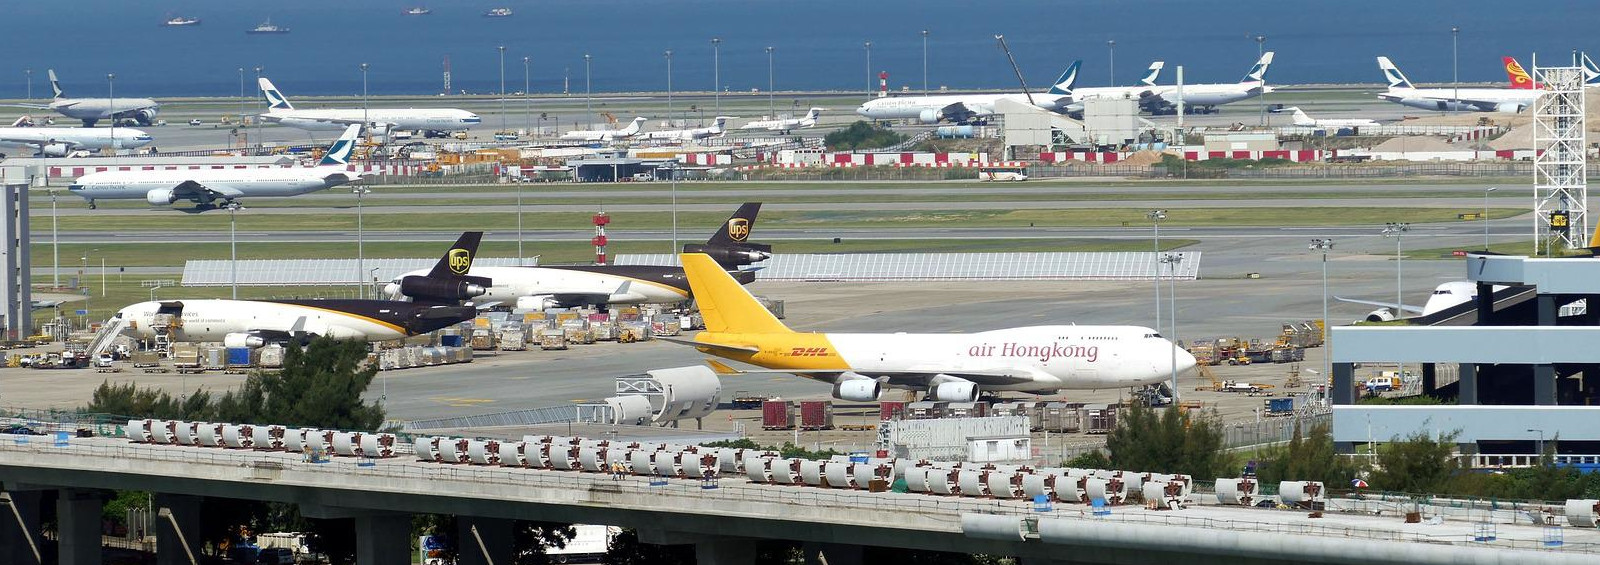 Titelbild der größten Flughäfen